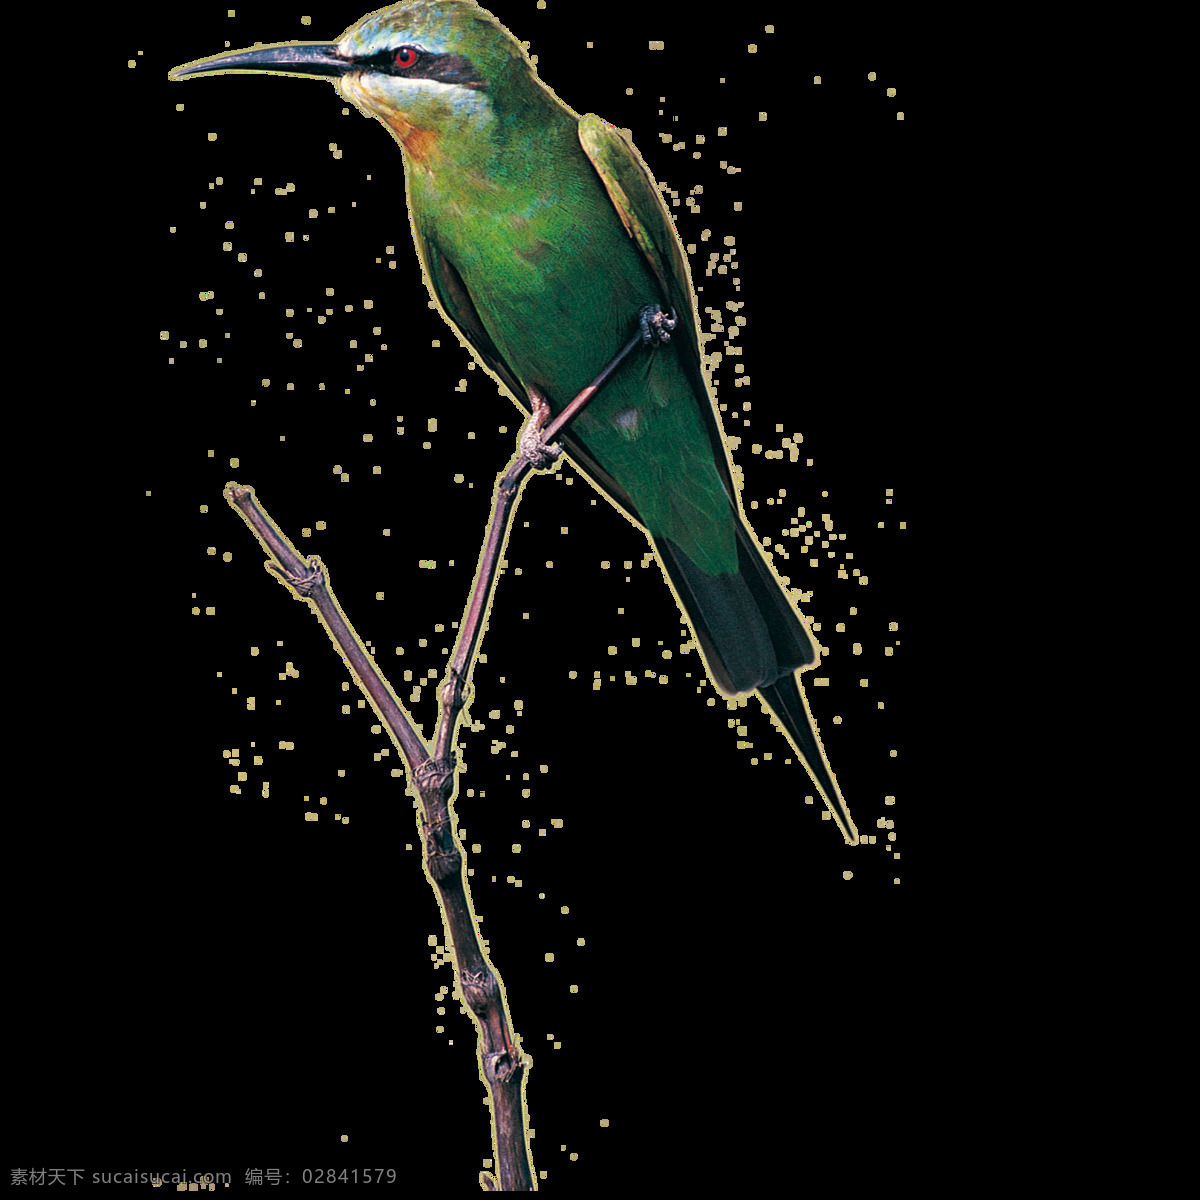 唯美 印象 鸟儿 绘画 绿色鸟儿 站立枝头 生动 写实 刻画